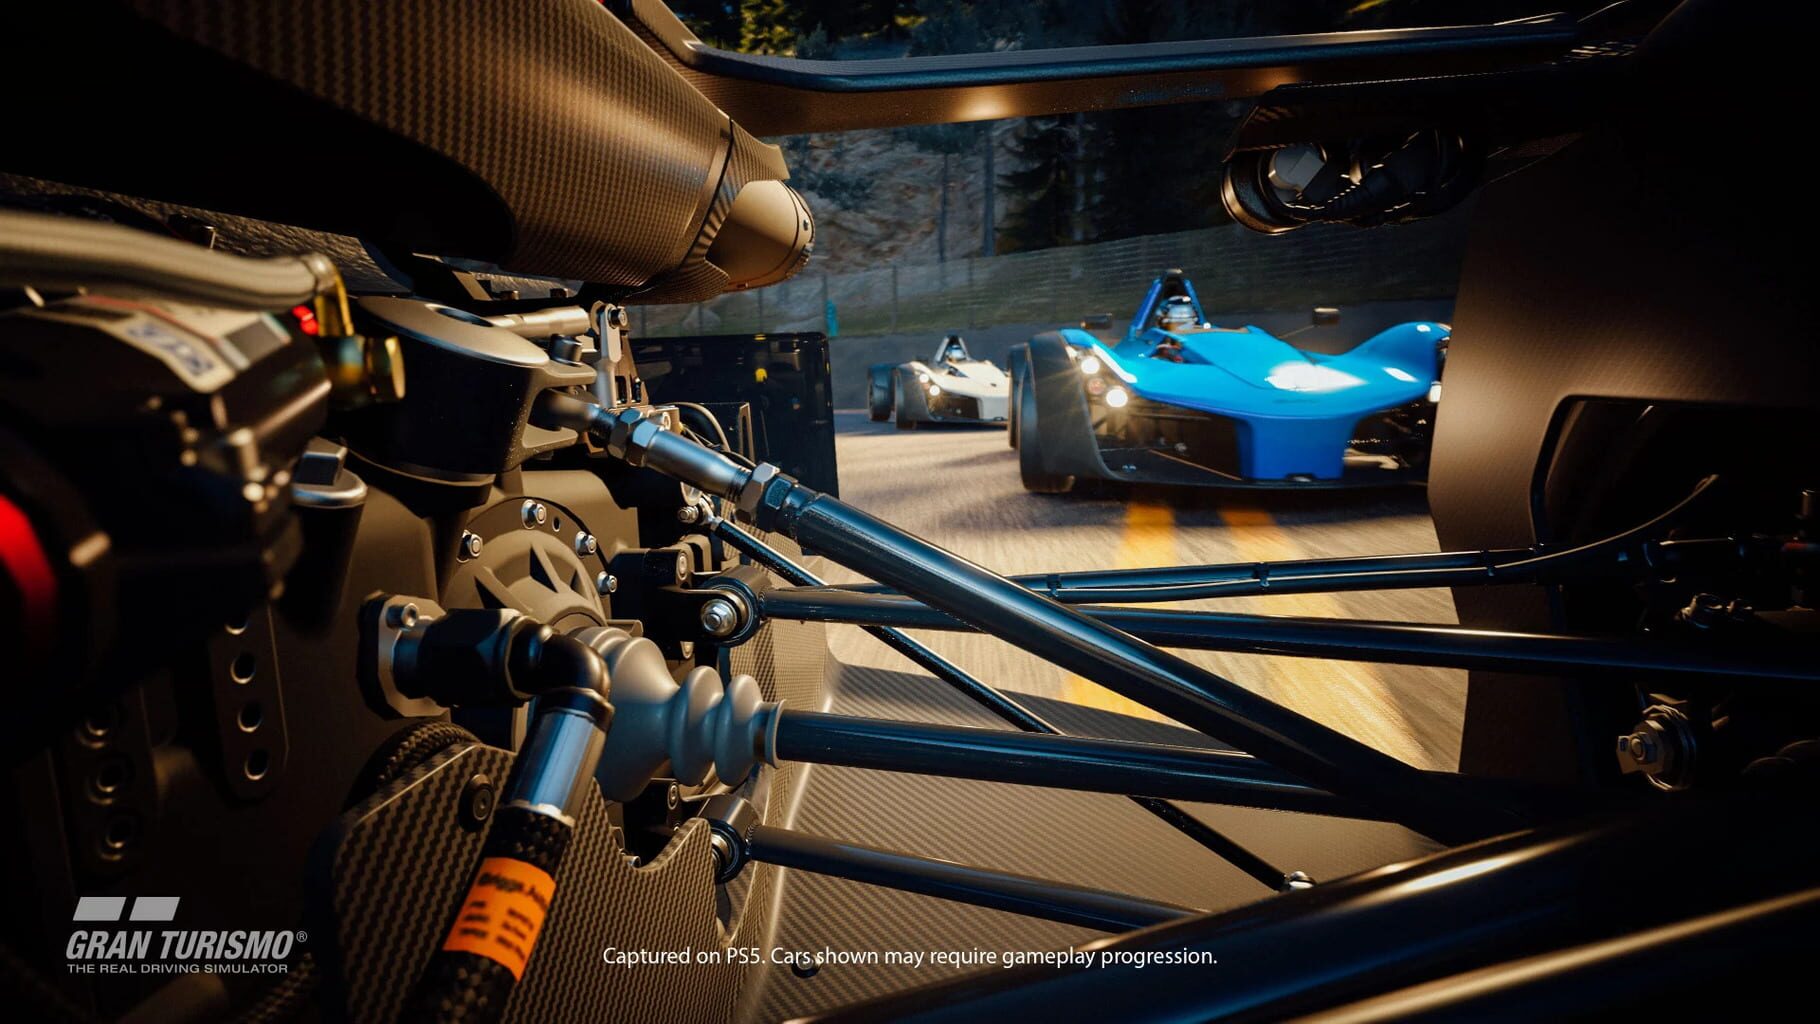 Gran Turismo 7: 25th Anniversary Edition Image